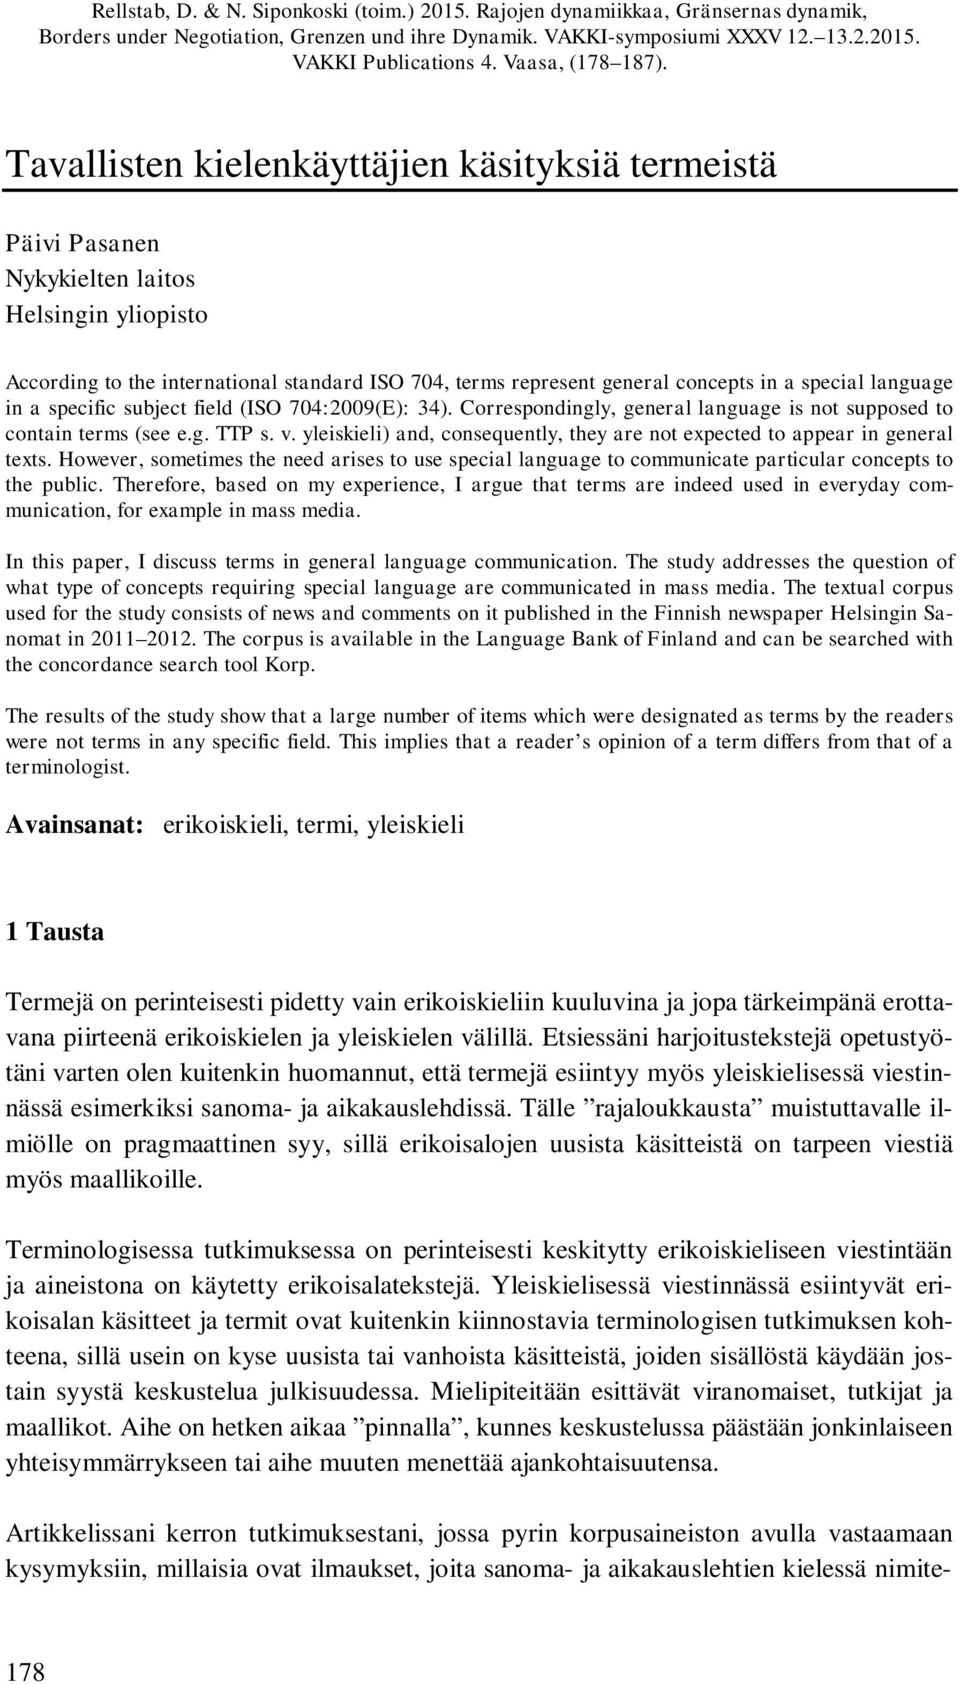 Tavallisten kielenkäyttäjien käsityksiä termeistä Päivi Pasanen Nykykielten laitos Helsingin yliopisto According to the international standard ISO 704, terms represent general concepts in a special